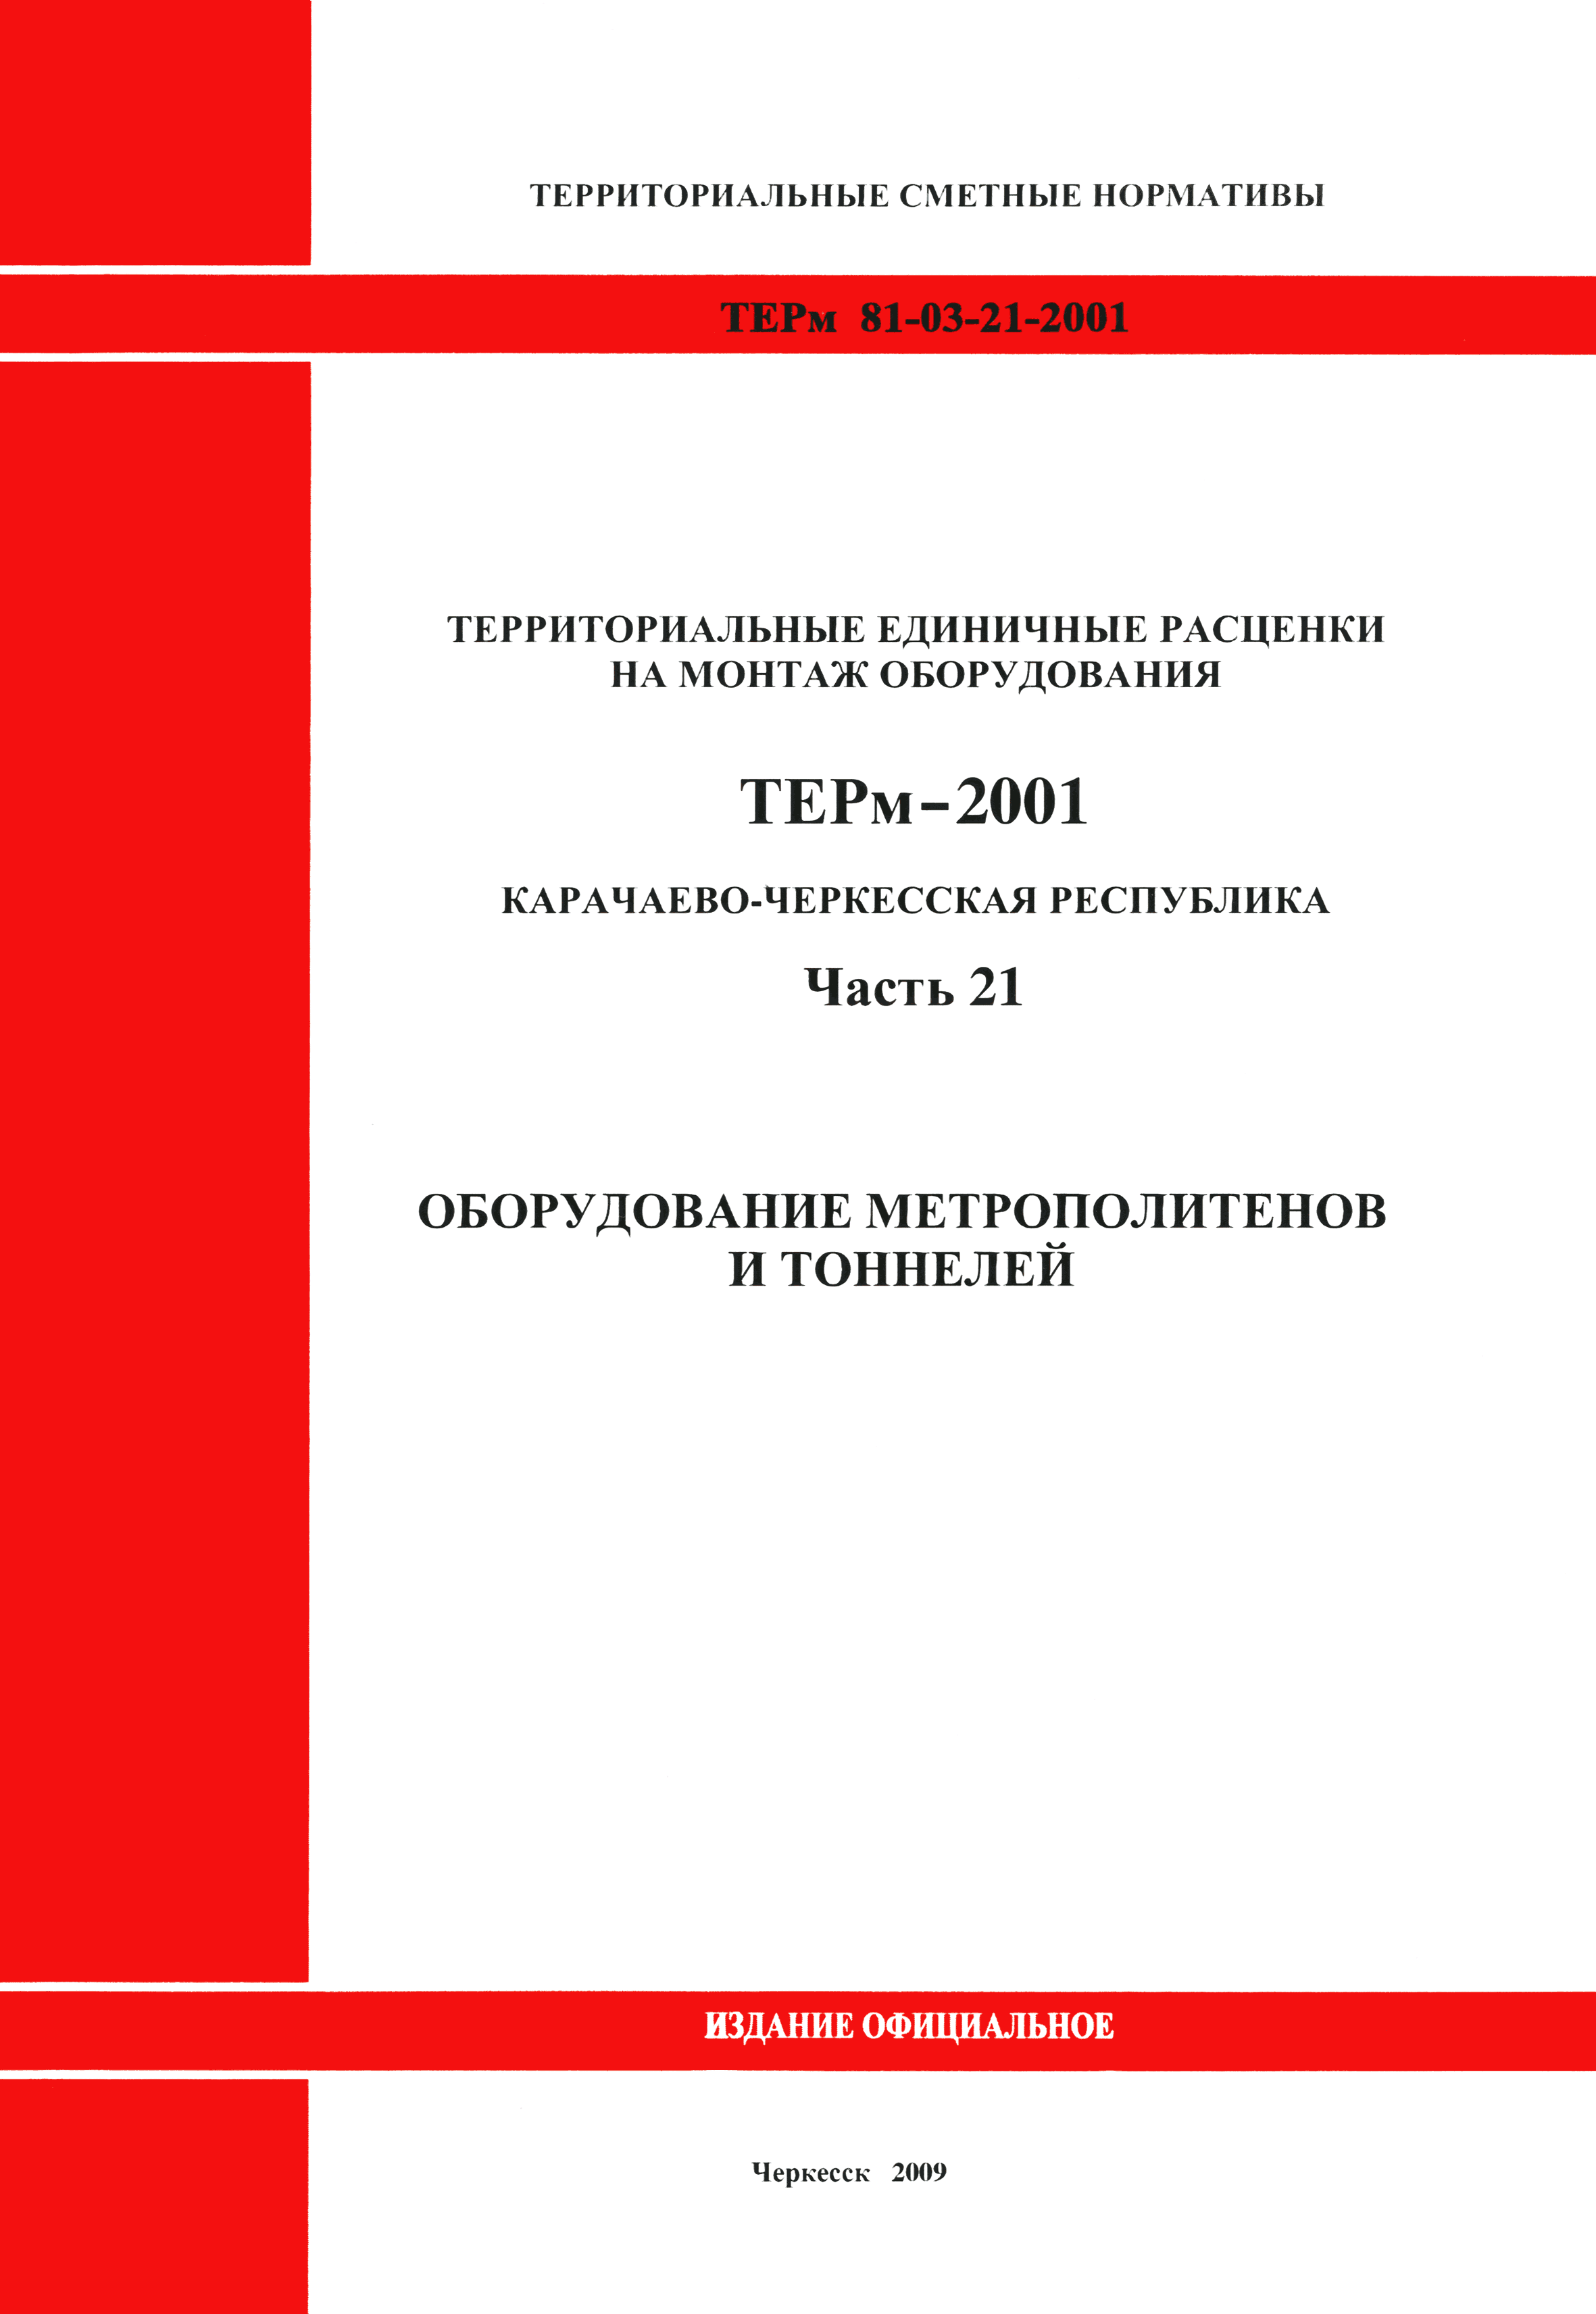 ТЕРм Карачаево-Черкесская Республика 21-2001